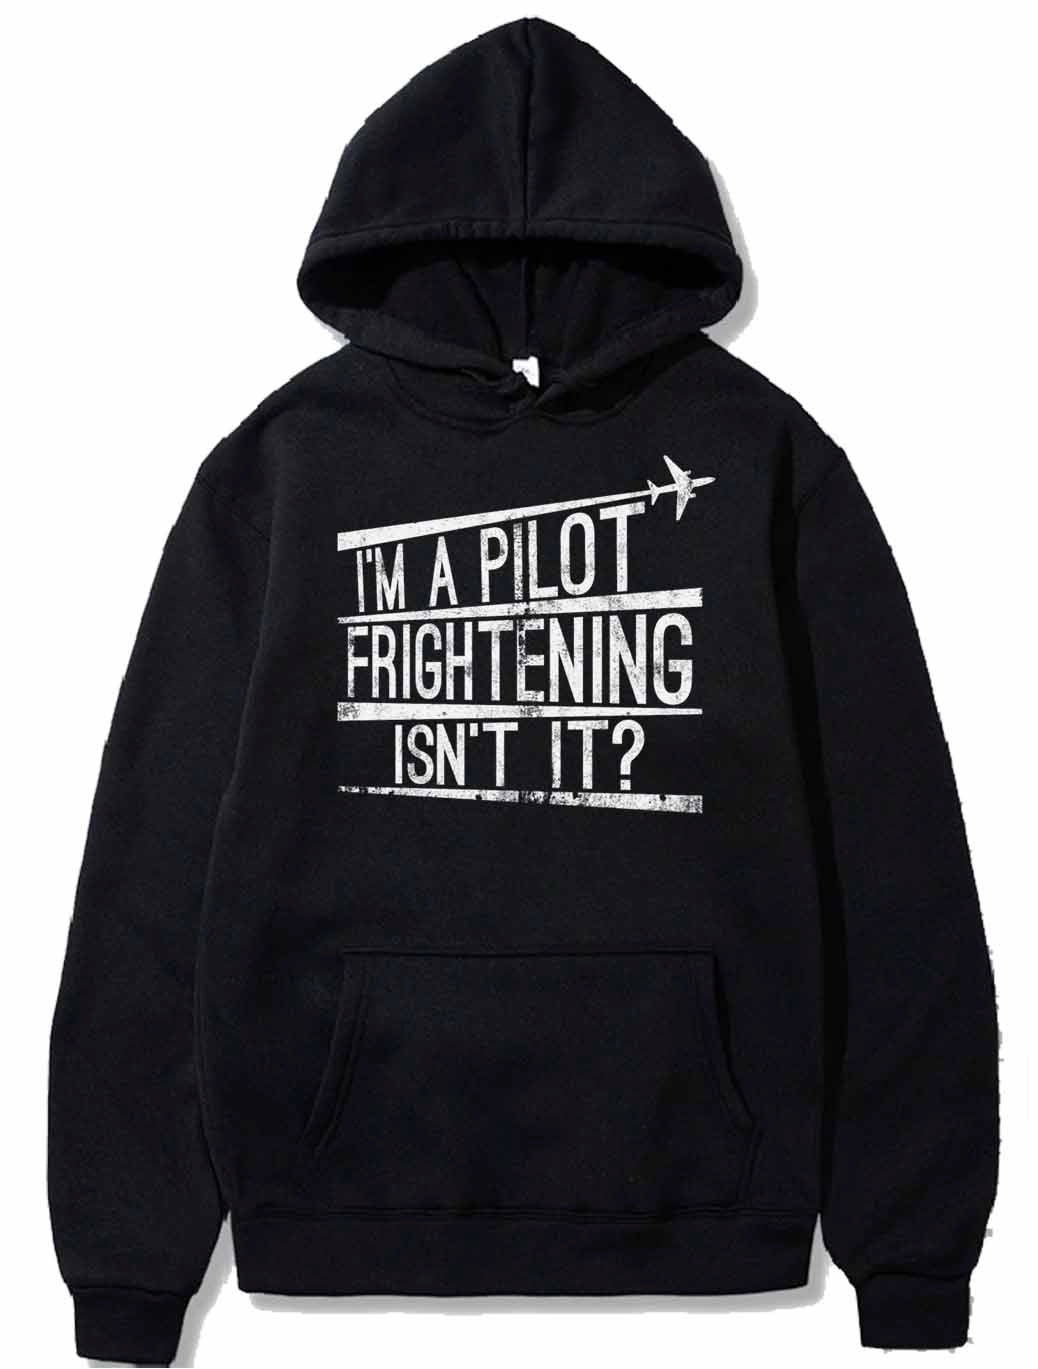 I'm A Pilot Frightening Isn't It Gift PULLOVER THE AV8R